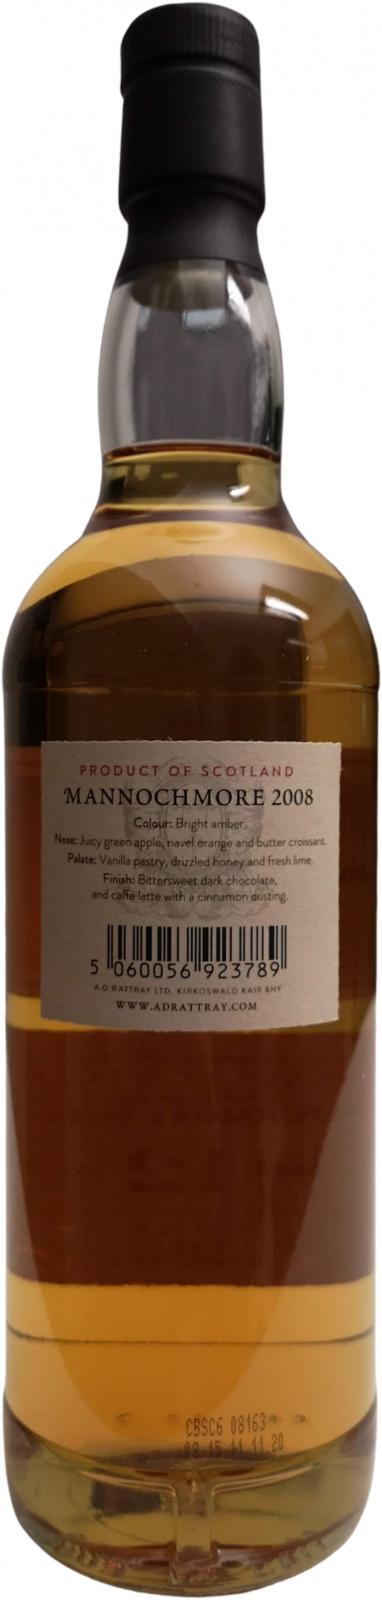 Mannochmore 2008 DR